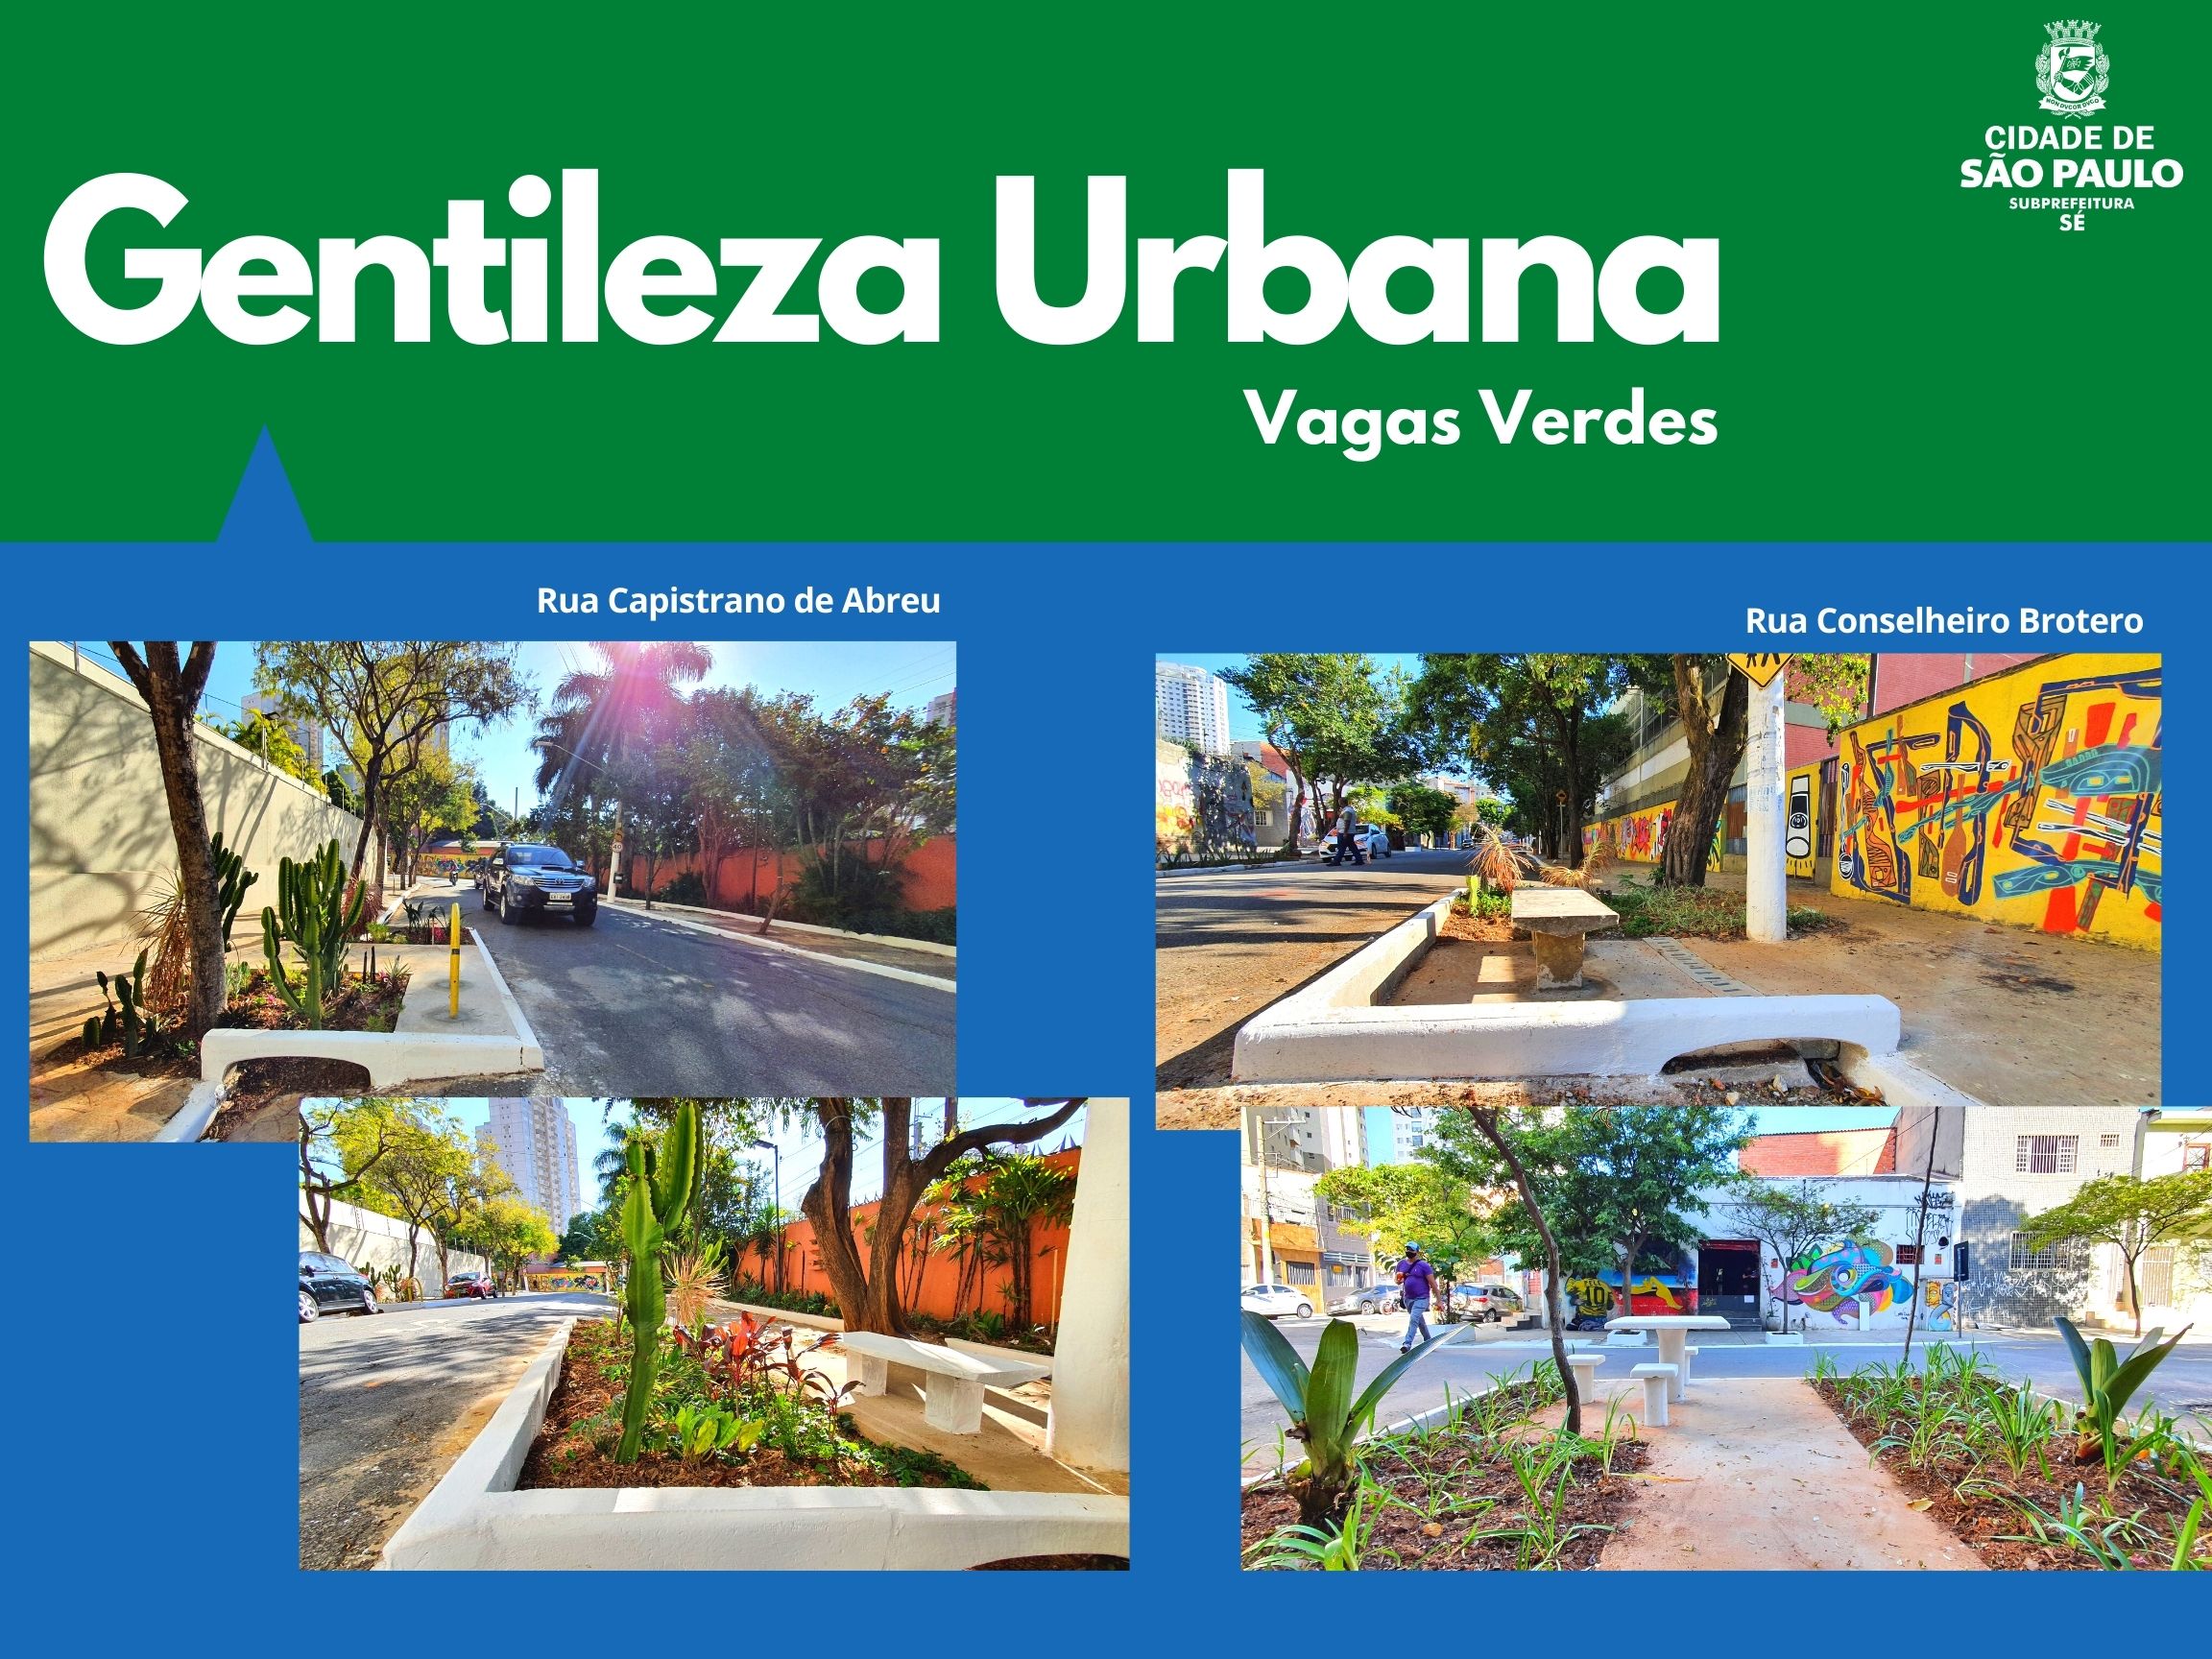 Arte escrito Gentileza Urbana com o logotipo da subprefeitura Sé mostra vagas verdes na rua capistrano de abreu